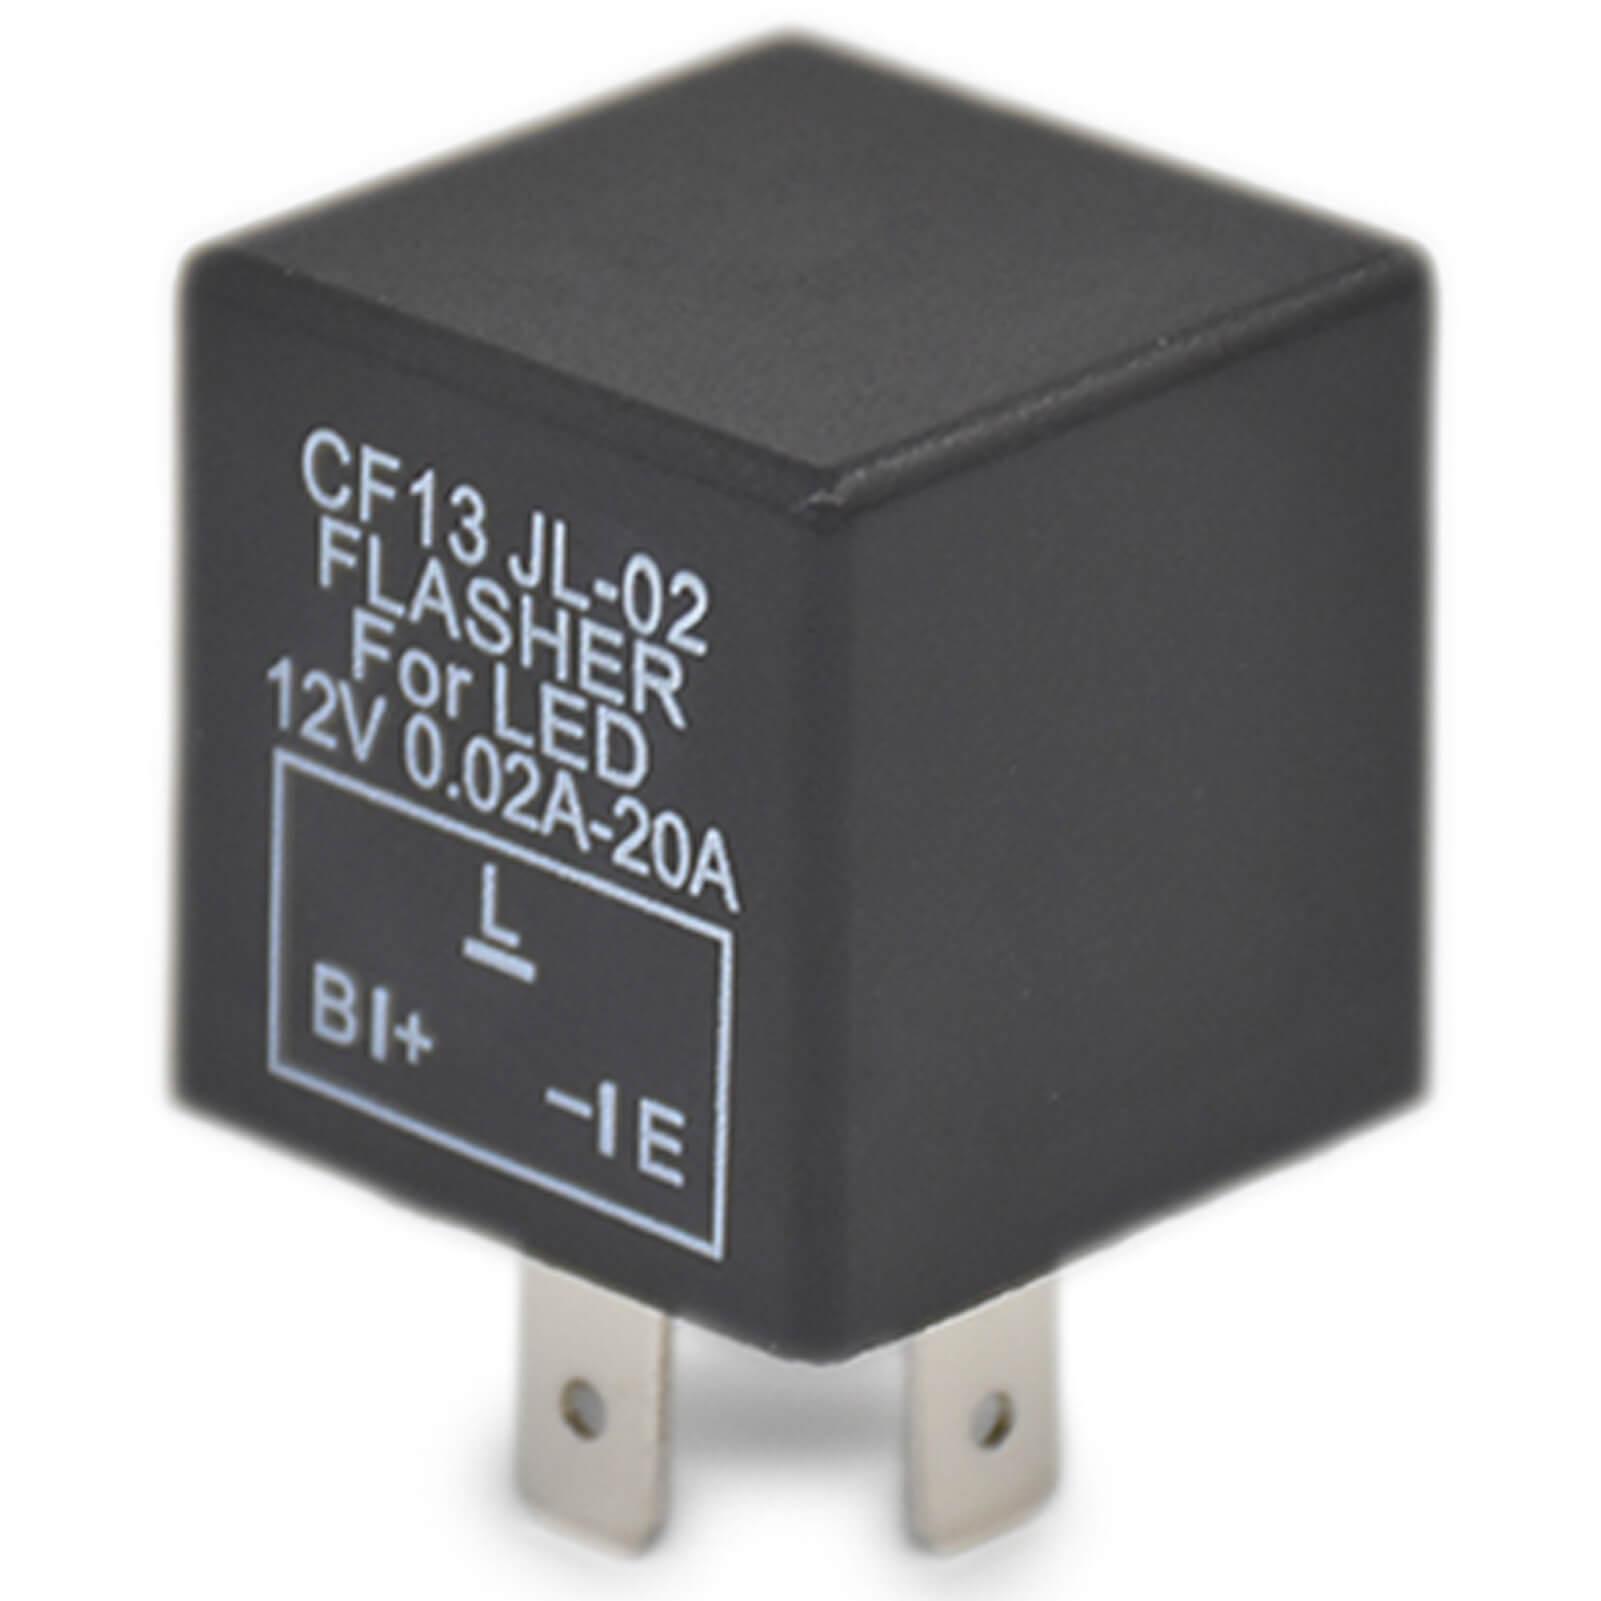 3-Pin LED Flasher Relay CF13 JL-02